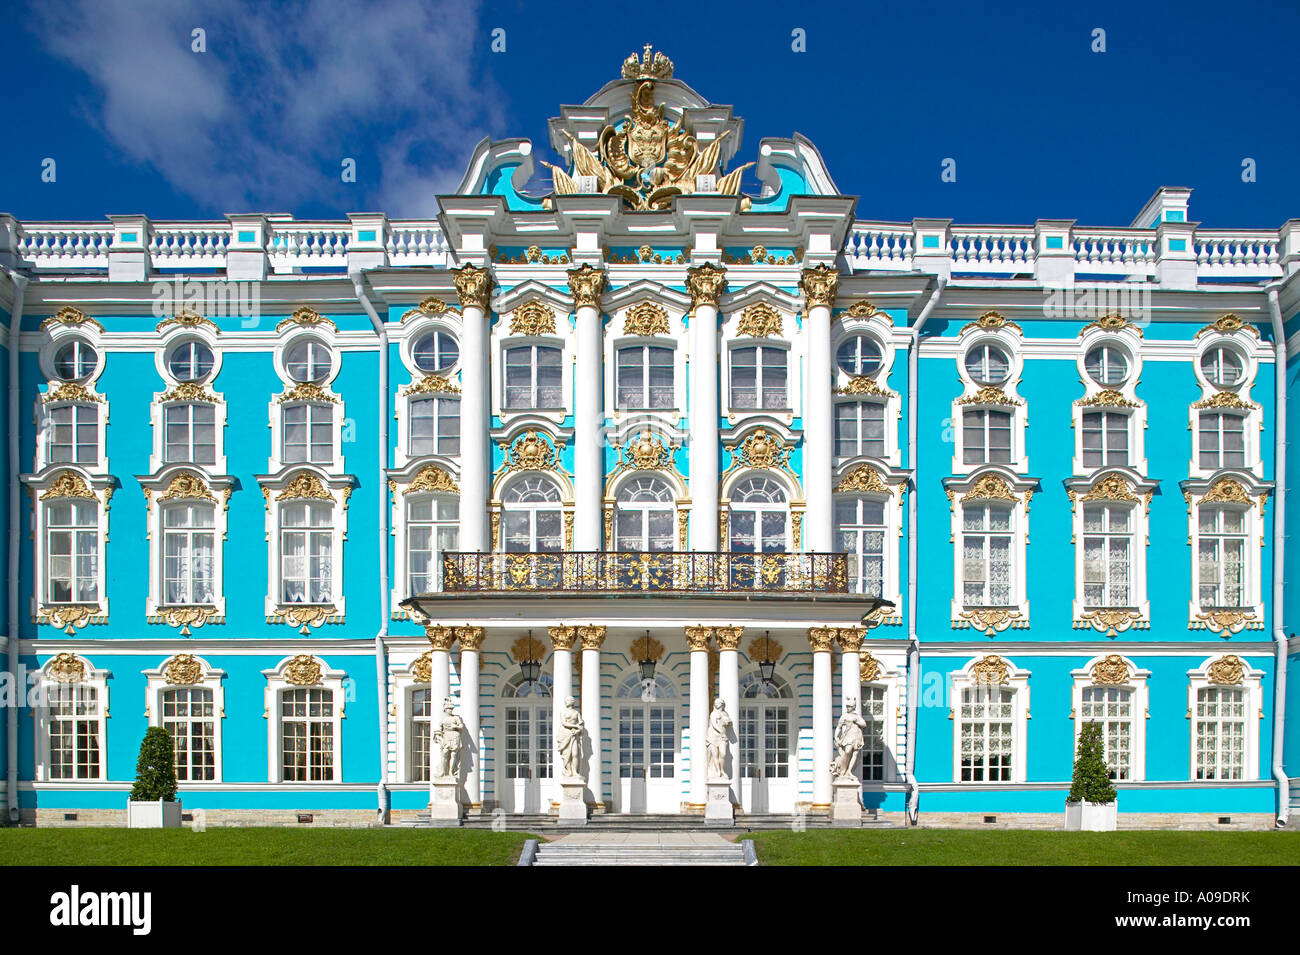 Sankt Petersburg Katharinenpalast, Castle Katharinas Palace in Puschkin Stock Photo